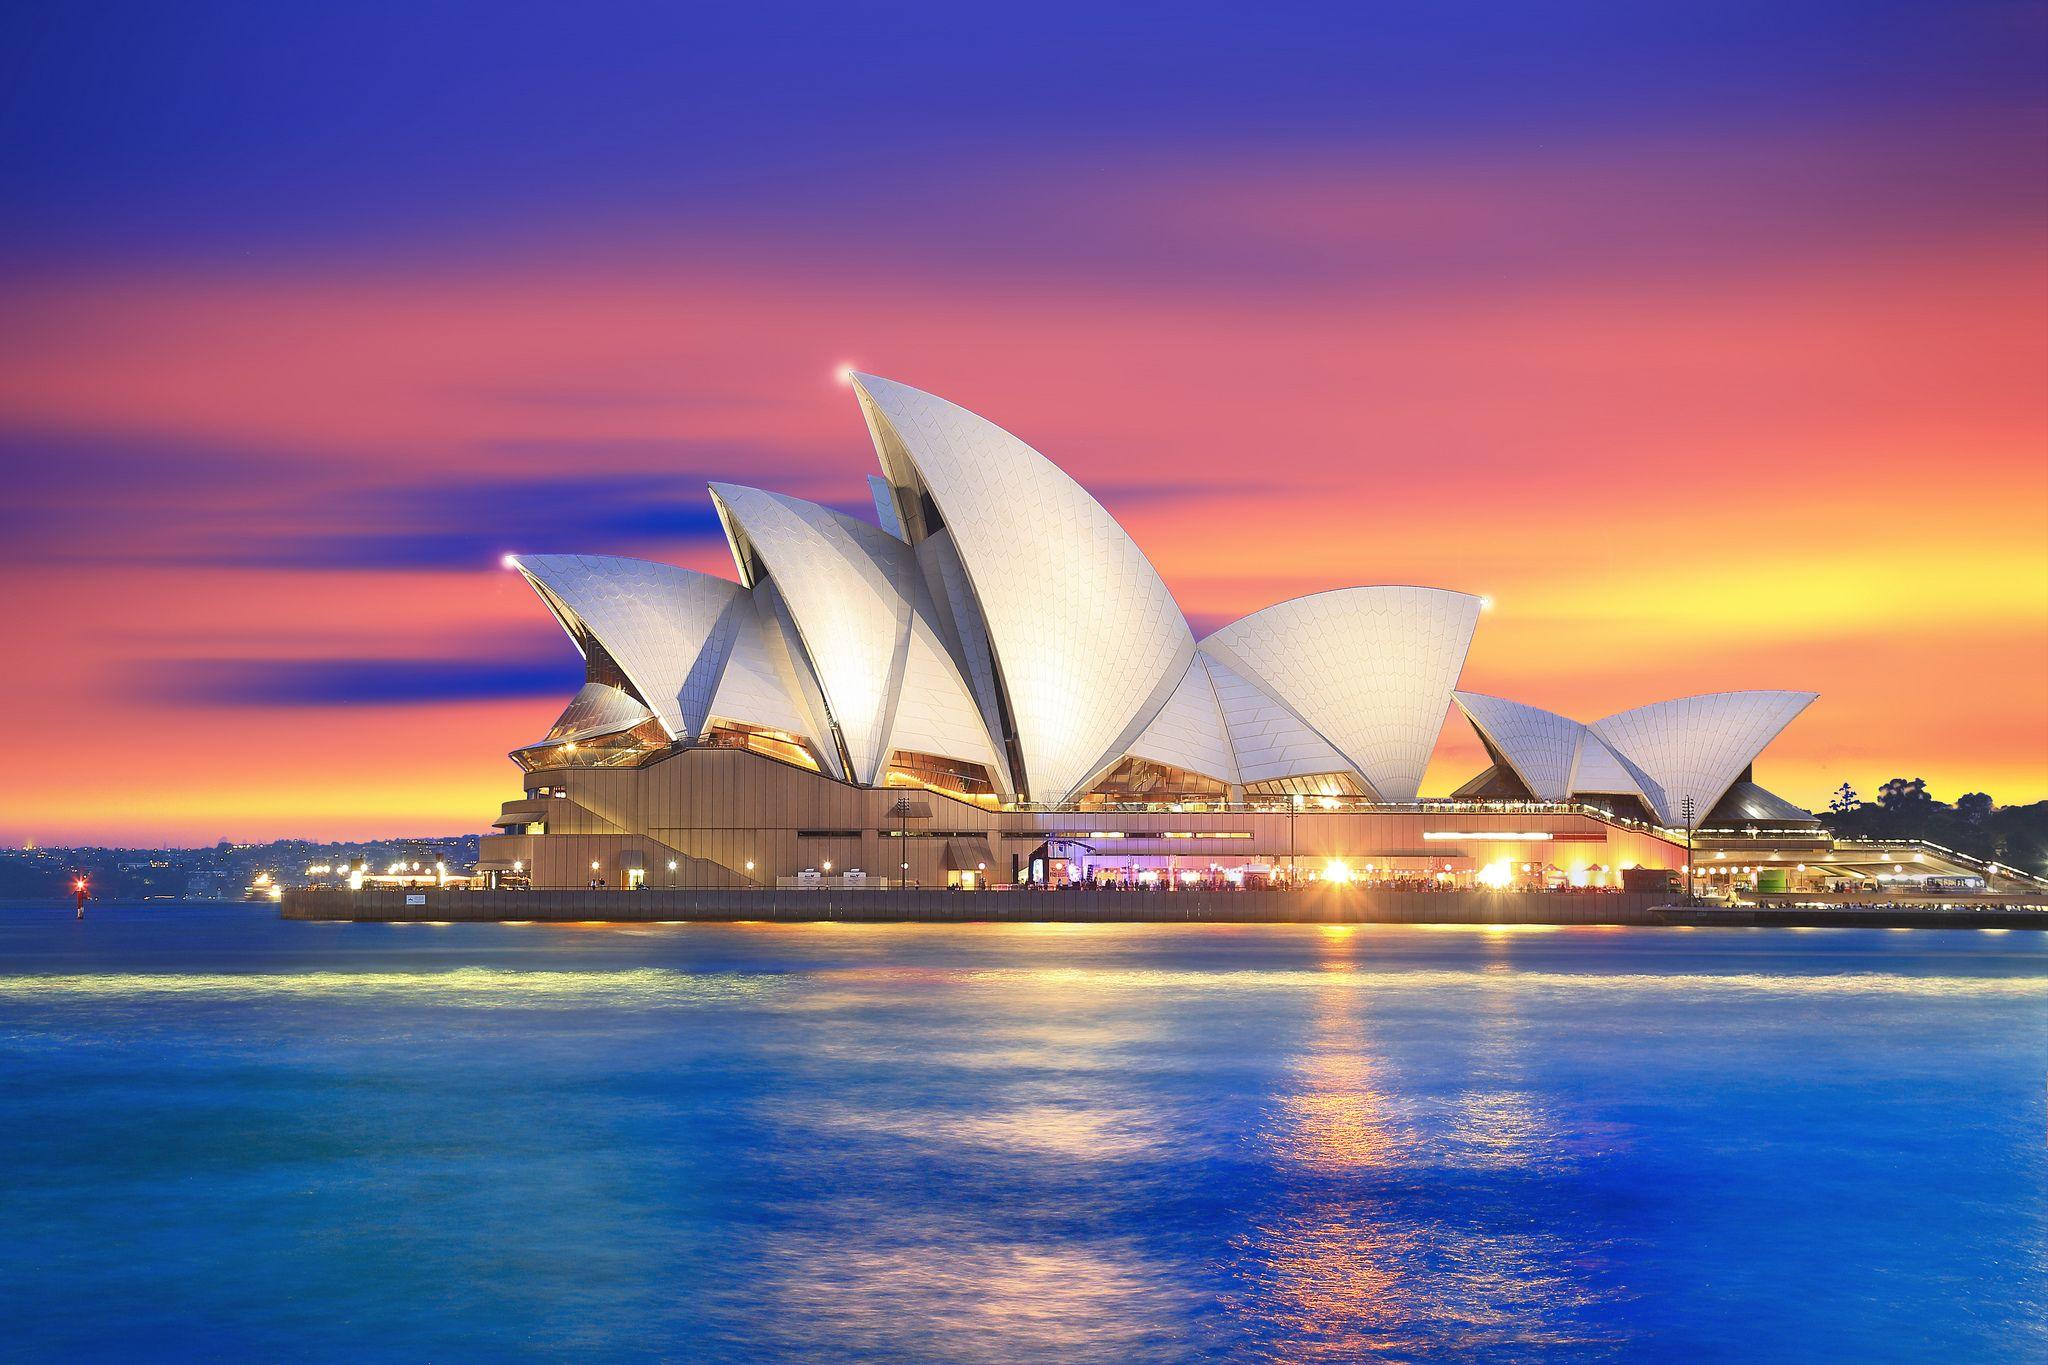 Sydney australia. Сиднейский оперный театр Австралия. Сиднейский оперный театр- г.Сидней (Австралия). Сиднейский оперный театр Австралия закат. Опера Хаус Сидней Австралия.